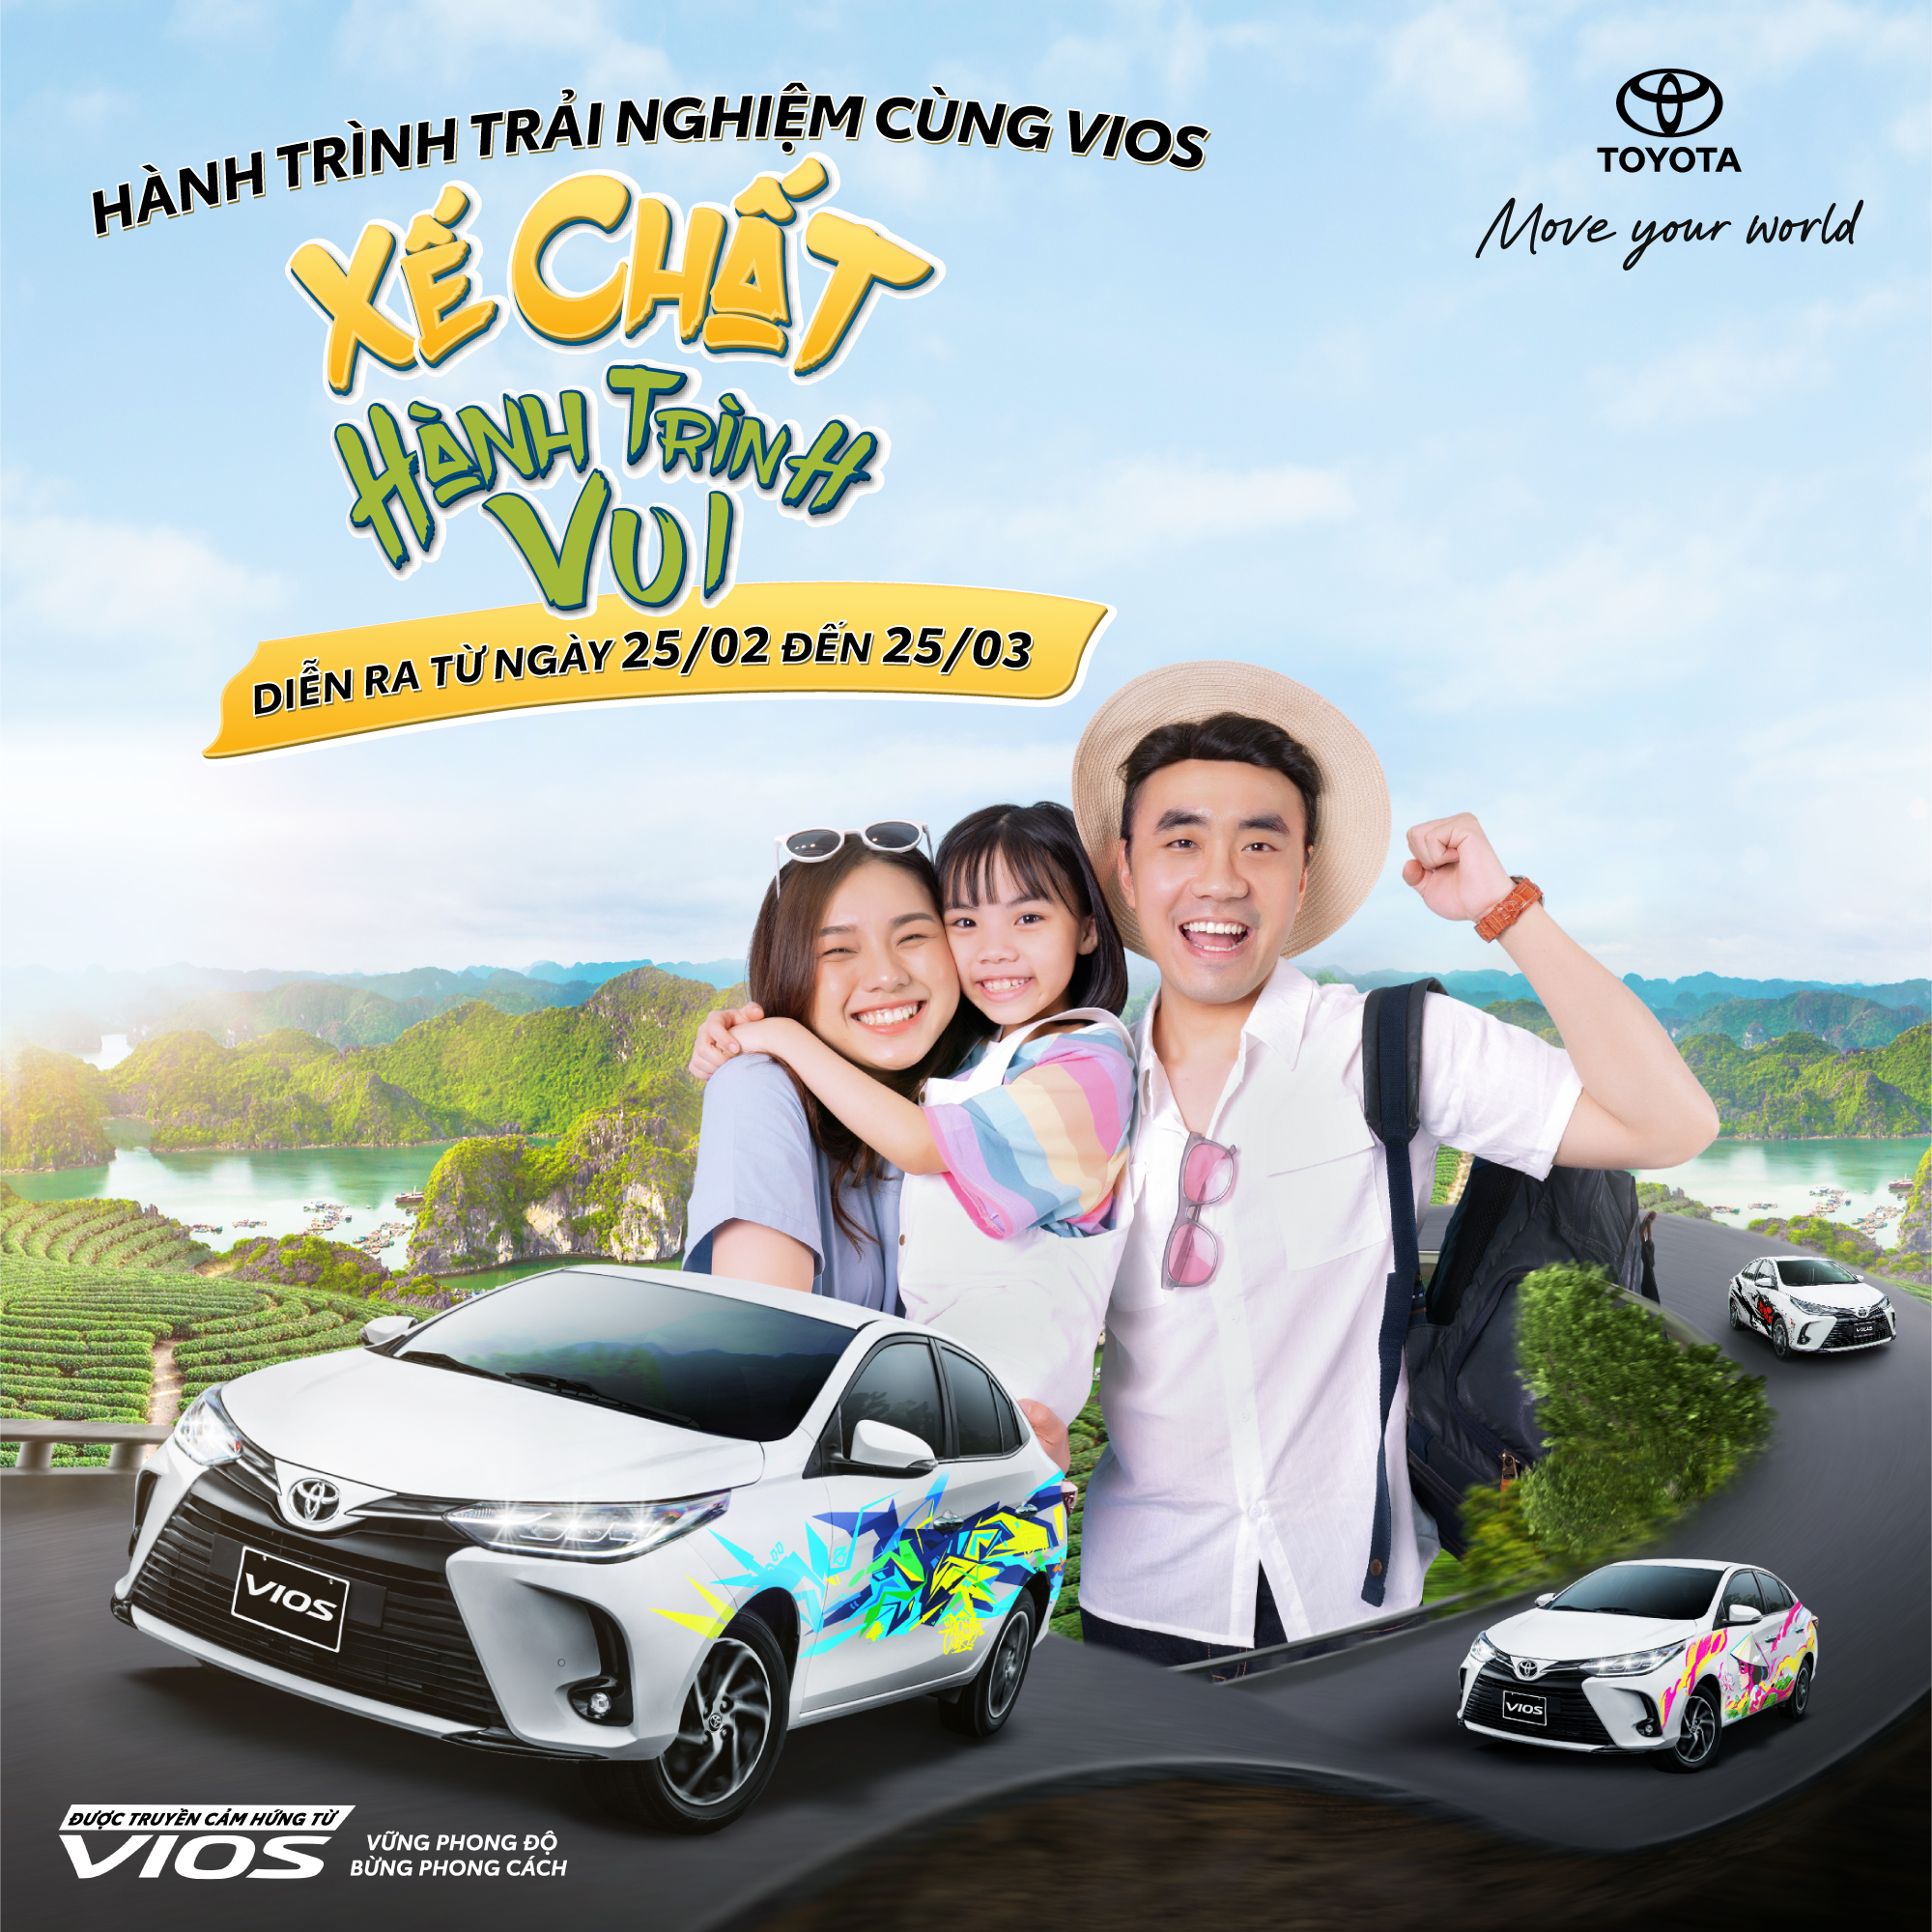 Chiêm ngưỡng dàn xế khủng Toyota Vios cực độc lạ diễu hành trên khắp 8 tỉnh thành Việt Nam